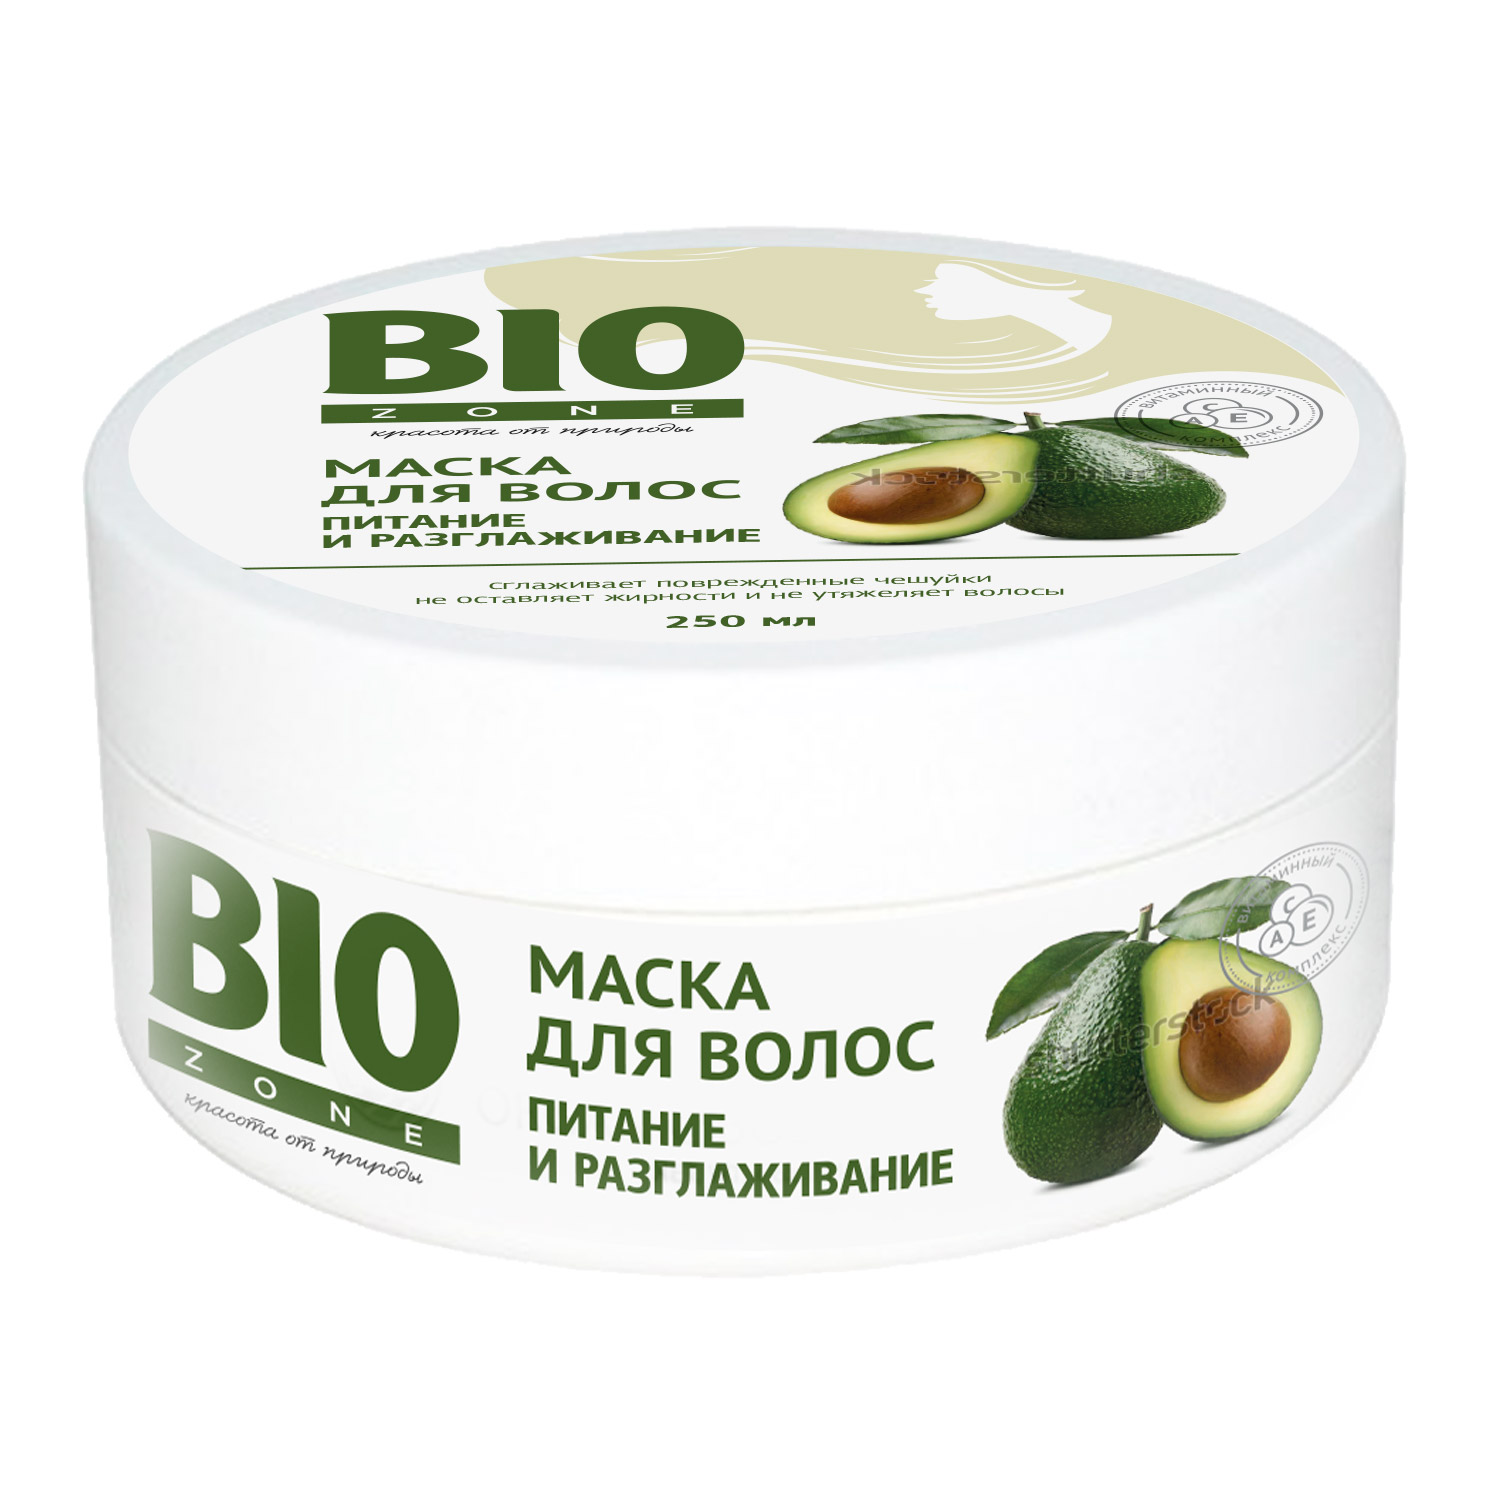 Биозон маска для волос с коллагеном и маслом авокадо 250мл маска для волос с коллагеном и маслом авокадо biozone биозон 250мл